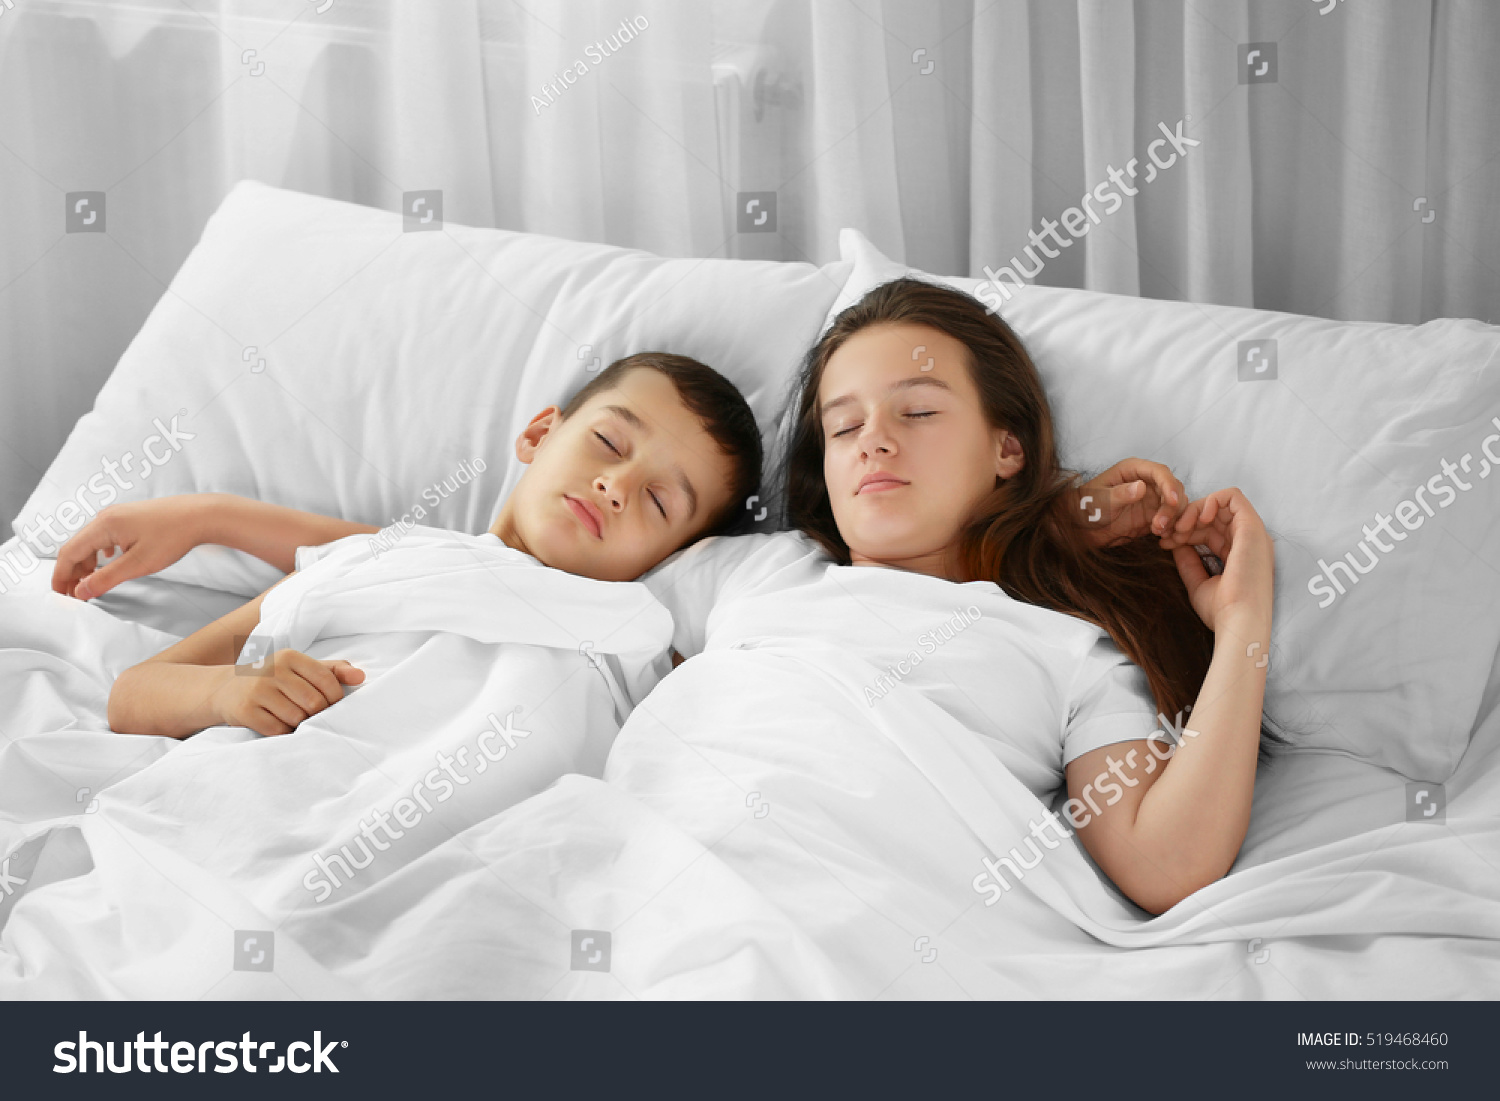 Сестра пустила брата в свою кровать